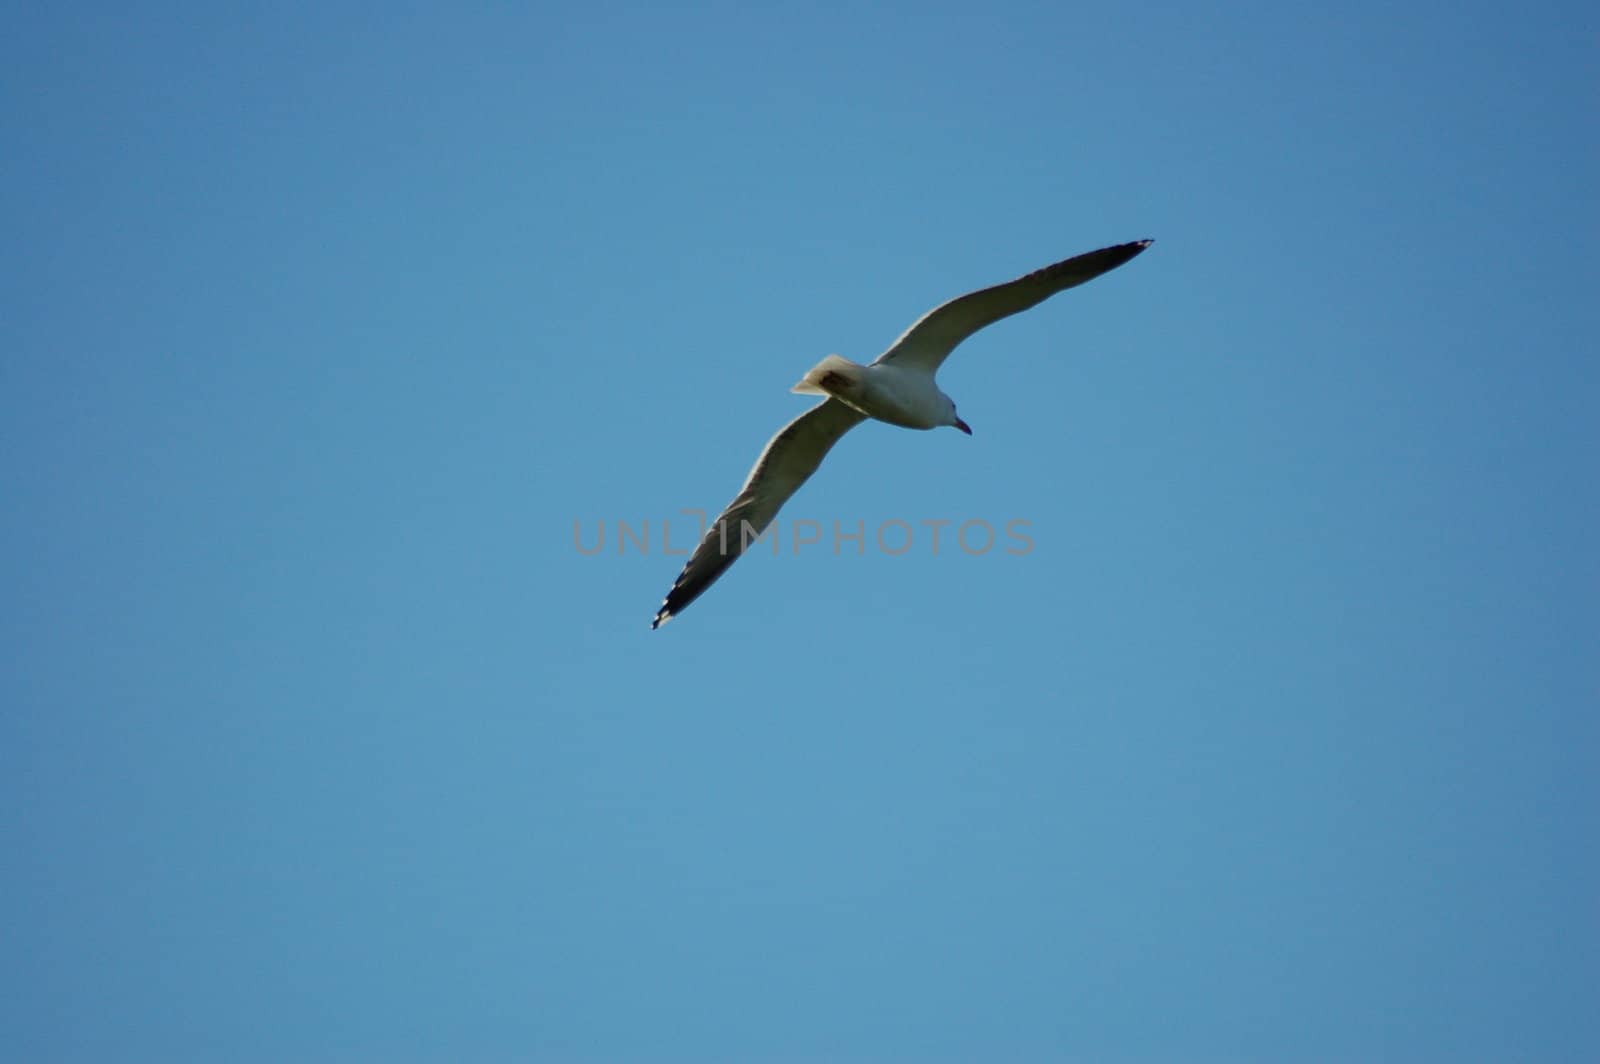 Soaring bird with wings open across a deep blue sky